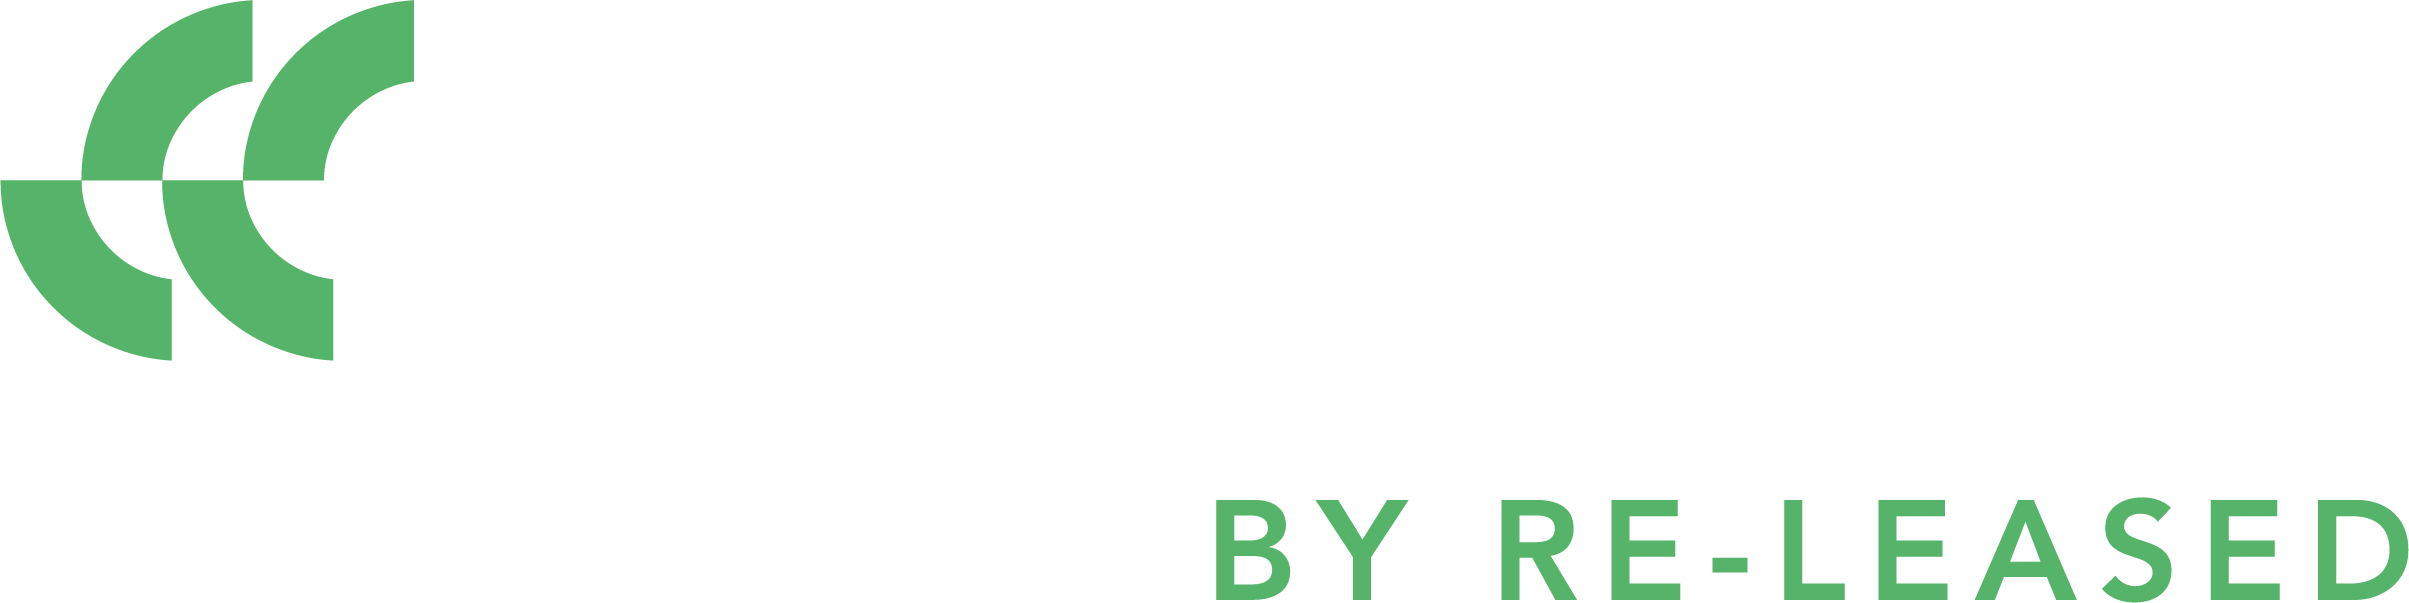 Credia Logo_White